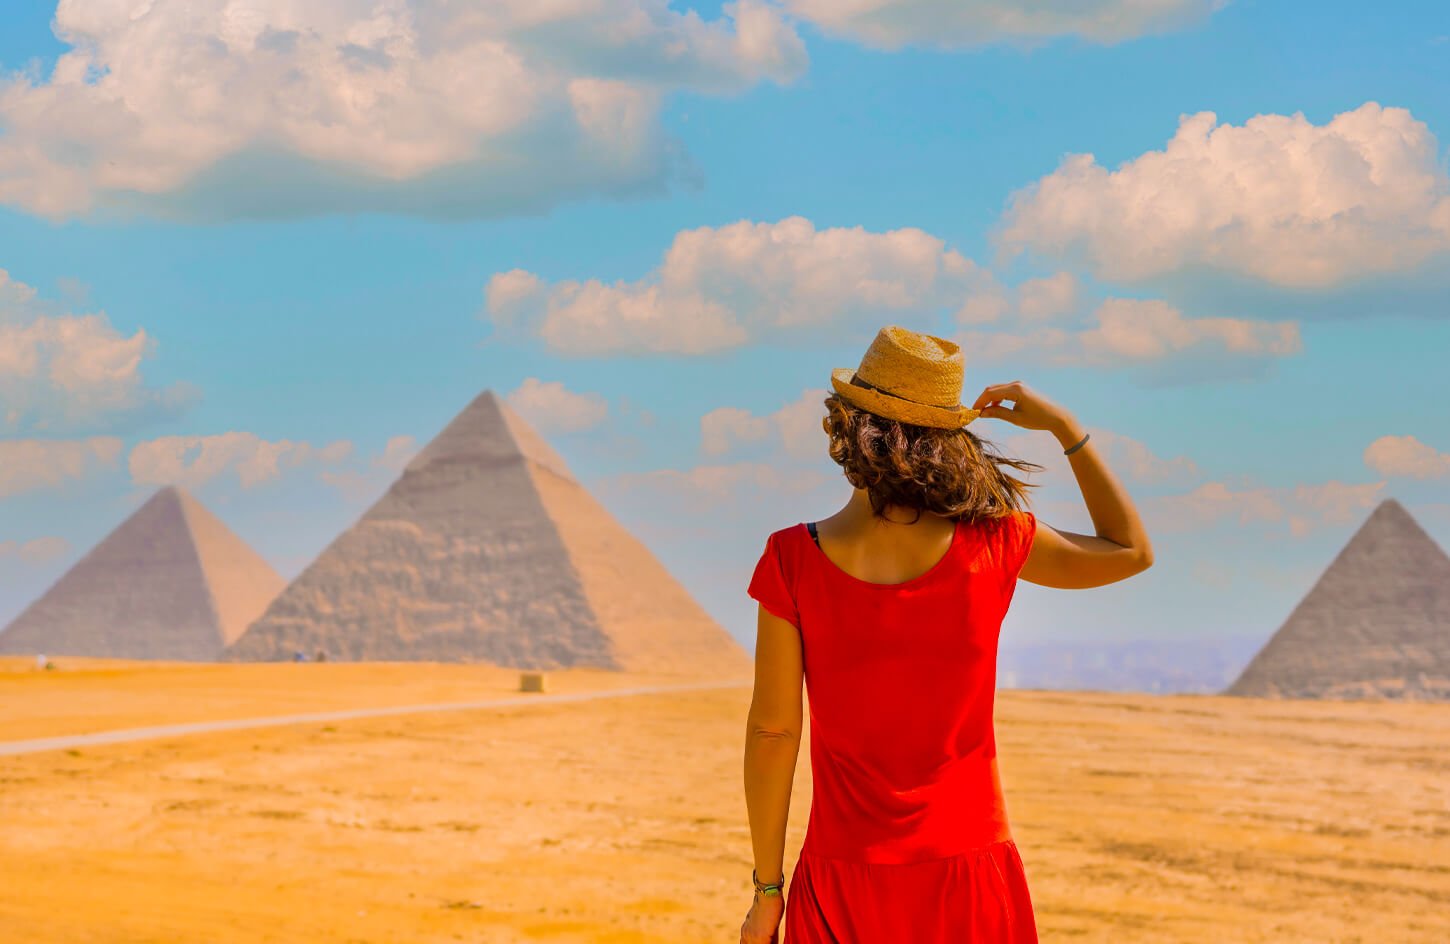 Photo Session At Giza Pyramids